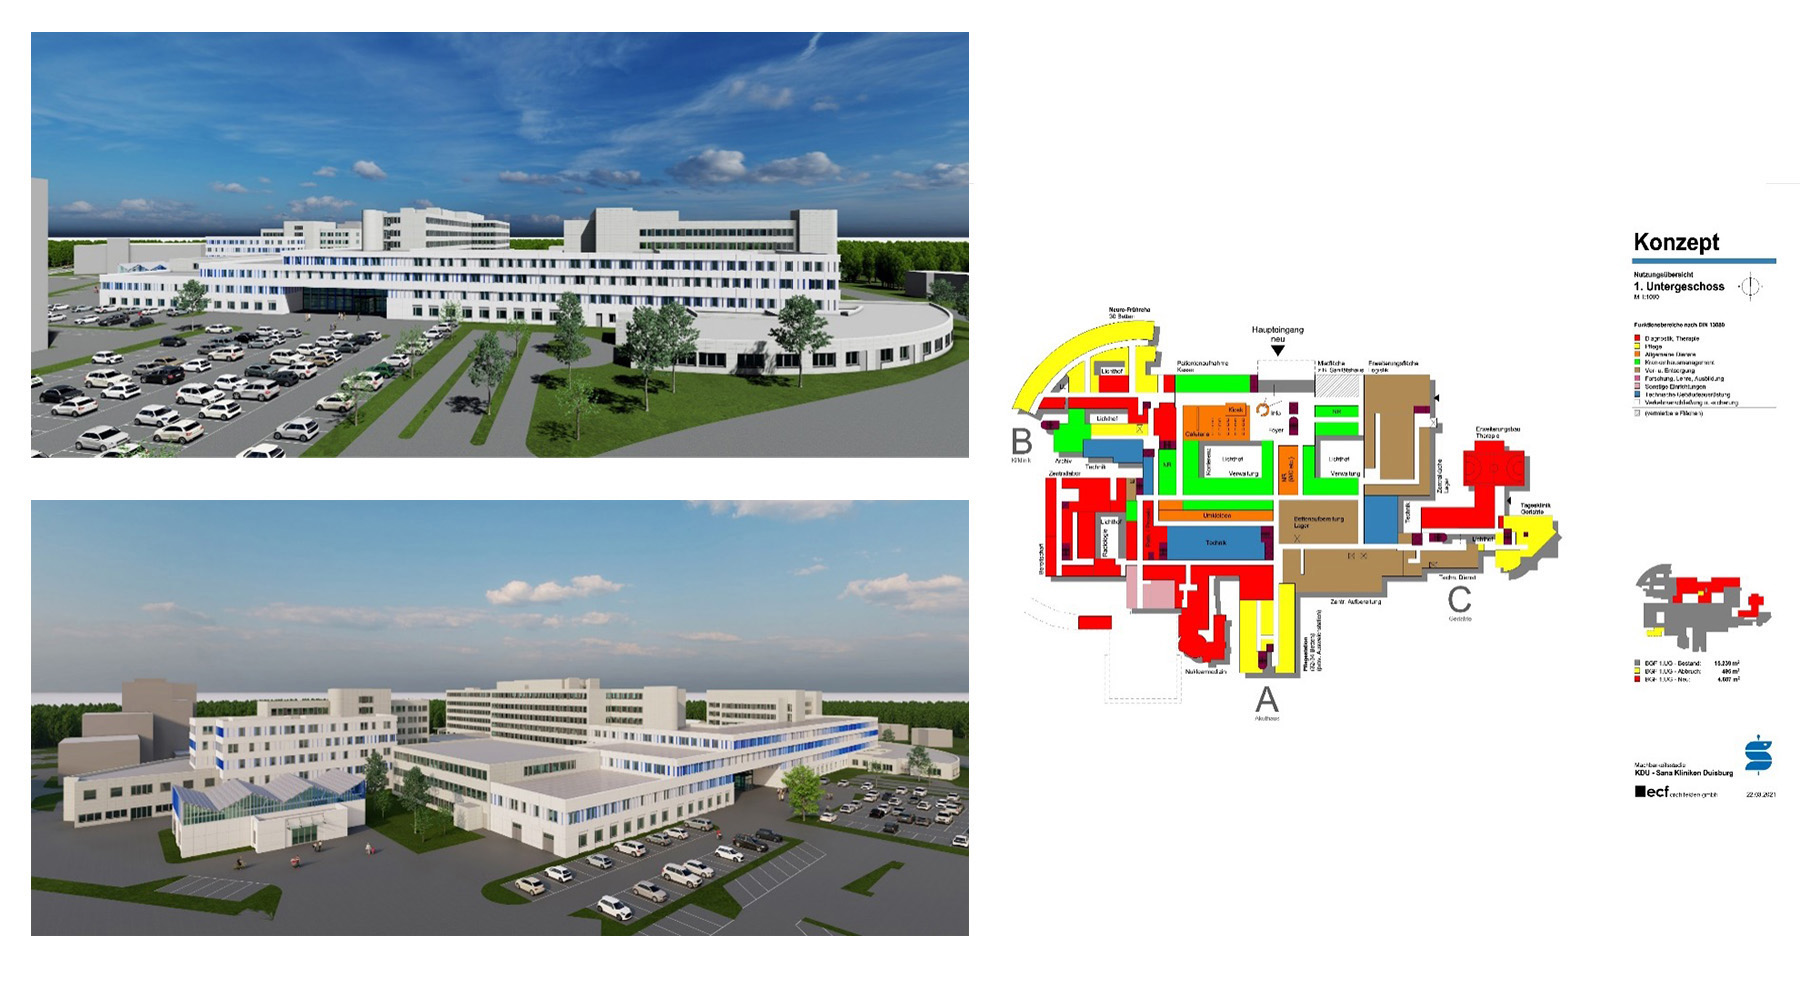 Machbarkeitsstudie/Zielplanung für die Sana Kliniken in Duisburg. Links 3D-Modell der Klinik, Rechts Gebäudekonzept.